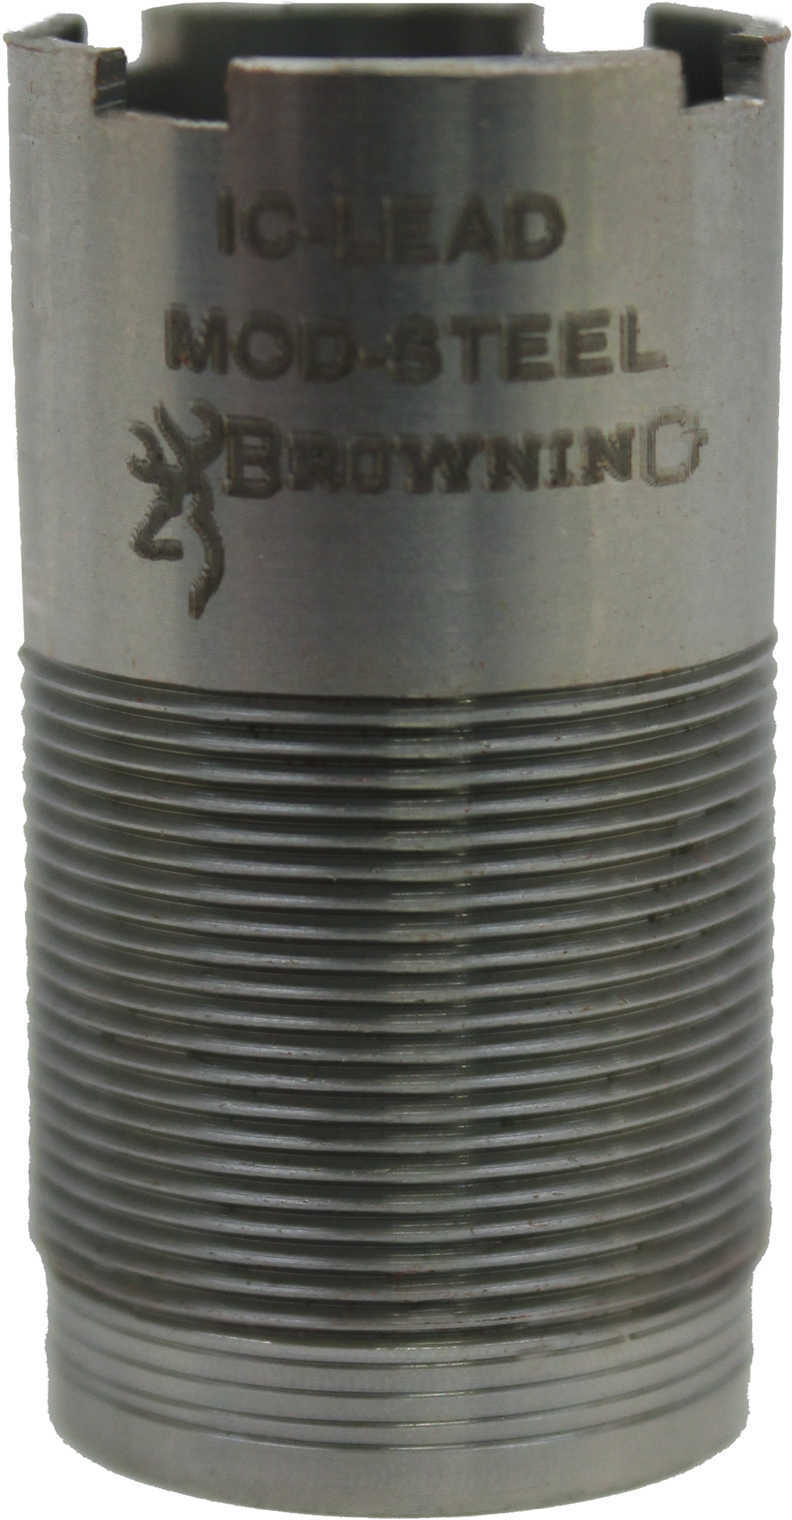 Browning 12 Gauge Std INV Choke Tube Improved Cylinder